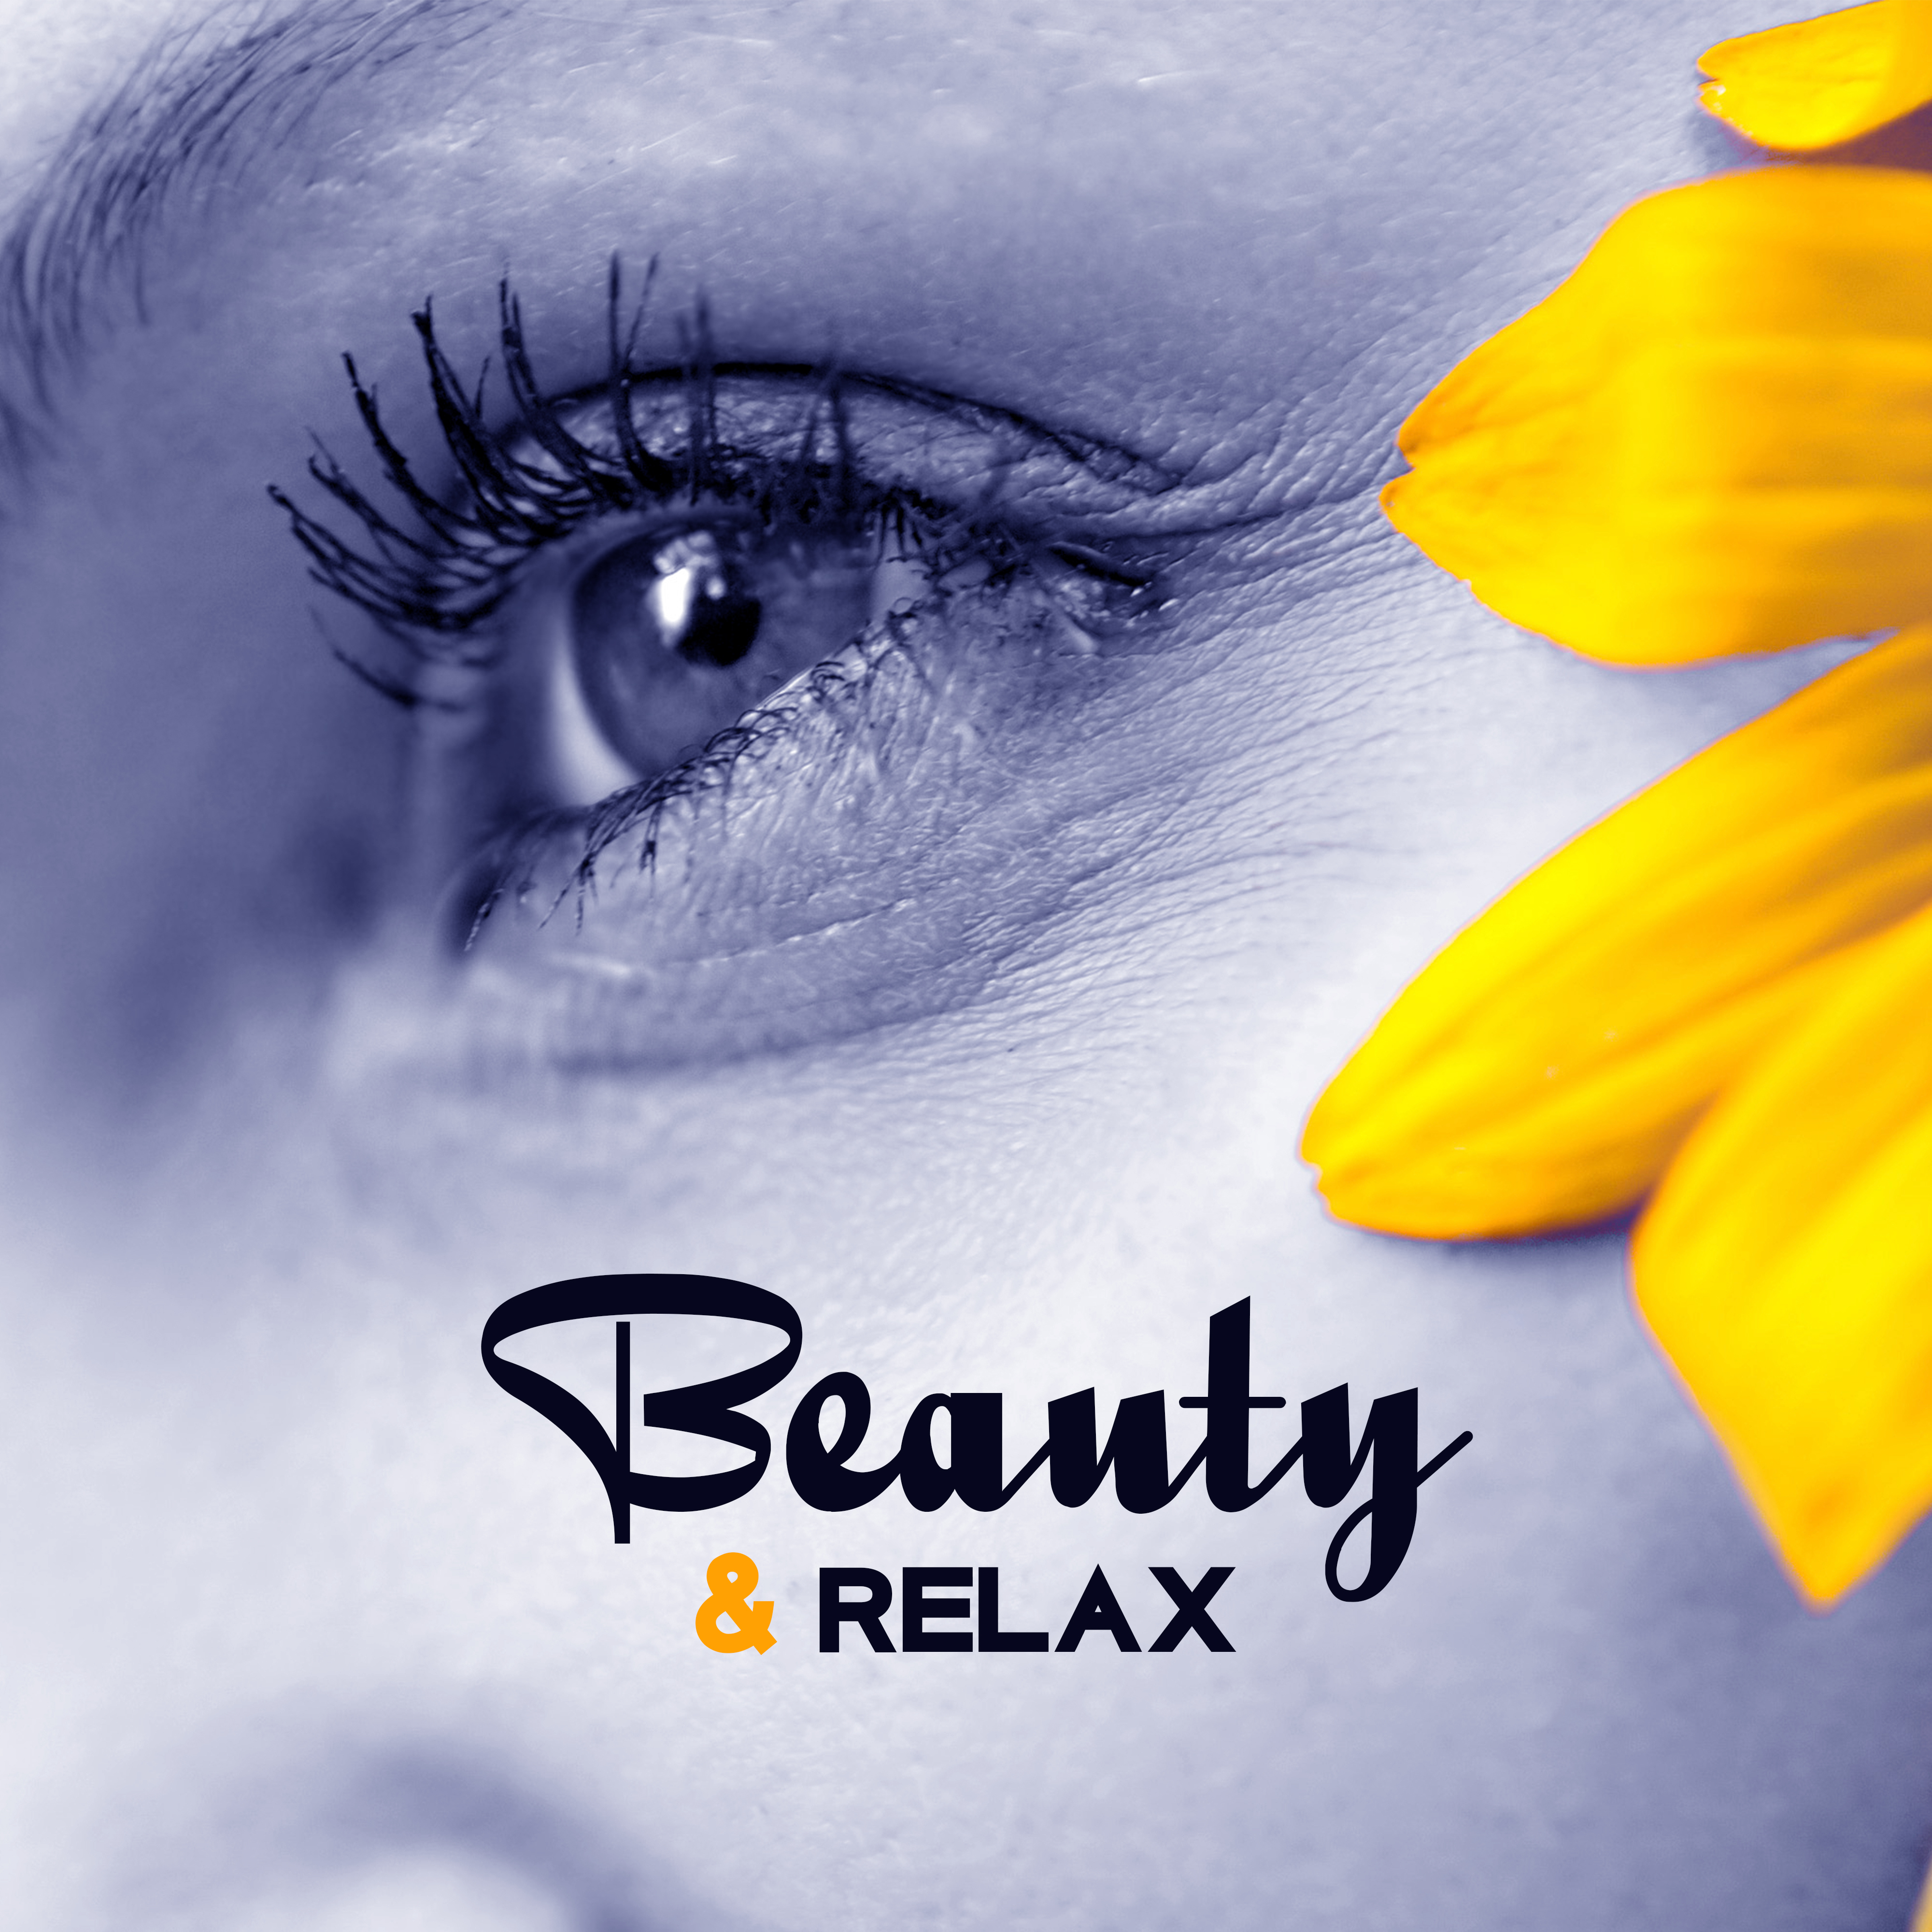 Beauty & Relax – Peaceful Spa Music, Soothing Nature Sounds to Rest, Deep Sleep, Zen Music, Inner Healing, Zen